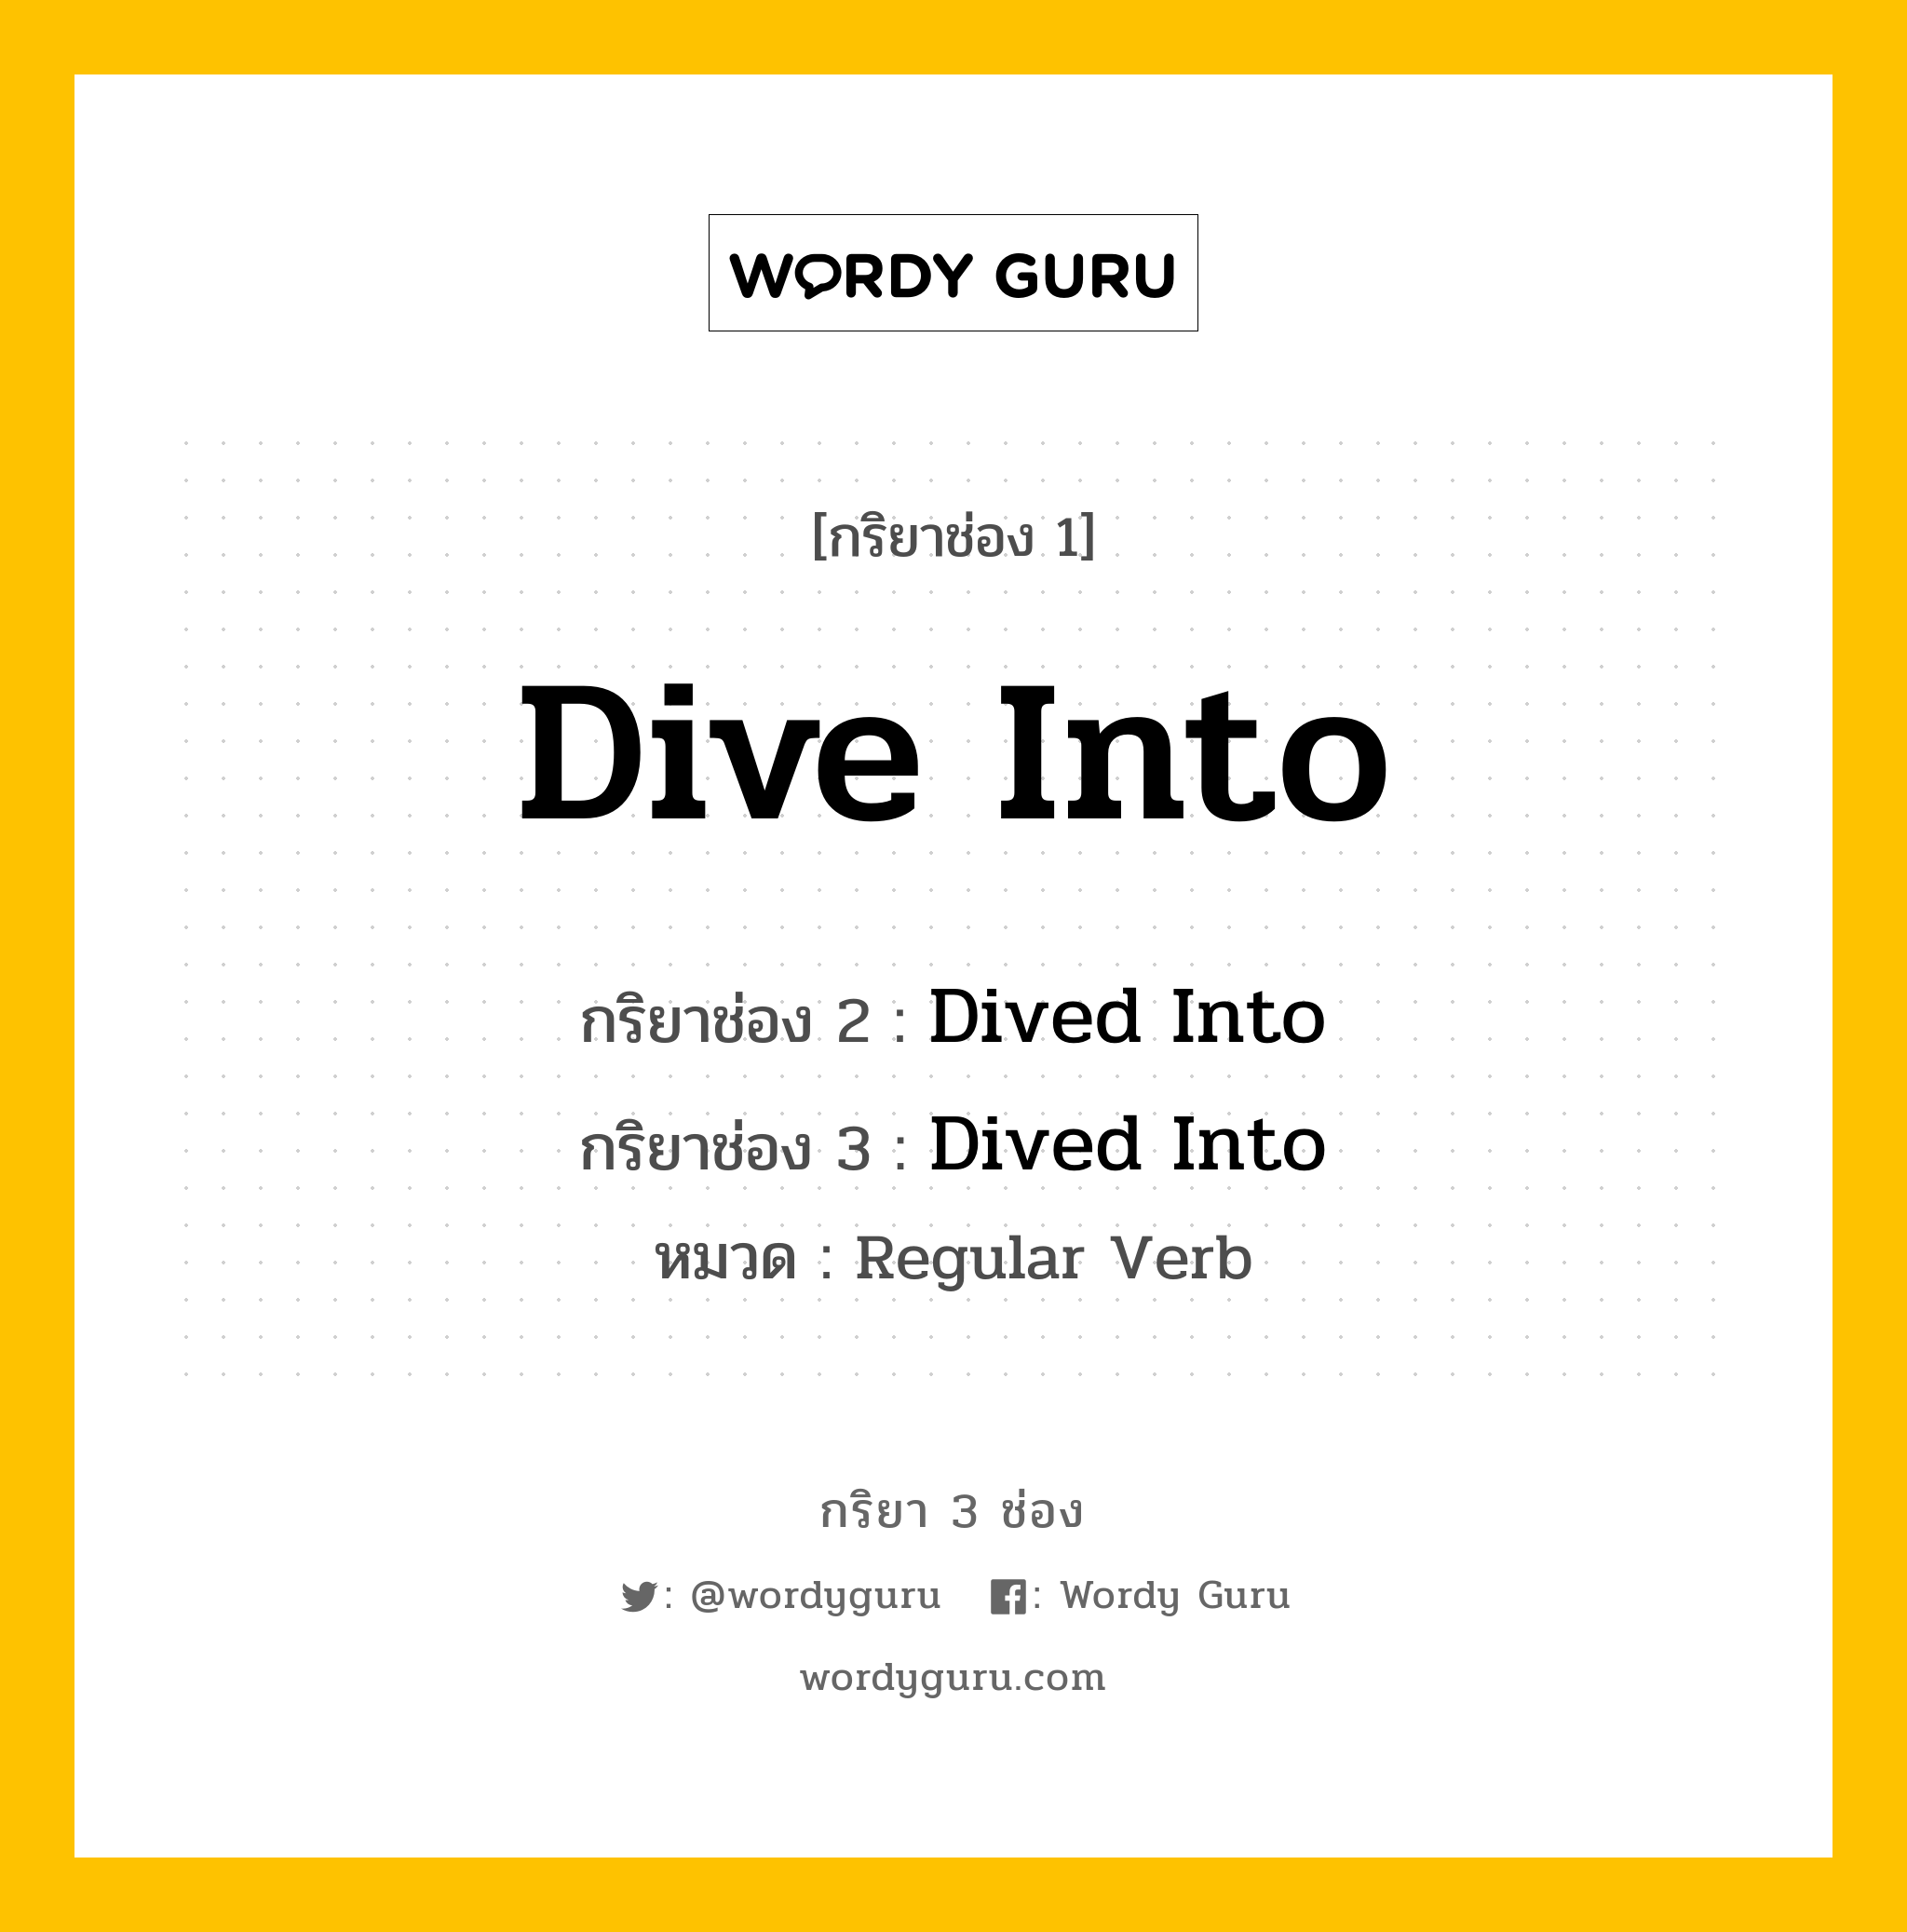 กริยา 3 ช่อง: Dive Into ช่อง 2 Dive Into ช่อง 3 คืออะไร, กริยาช่อง 1 Dive Into กริยาช่อง 2 Dived Into กริยาช่อง 3 Dived Into หมวด Regular Verb หมวด Regular Verb